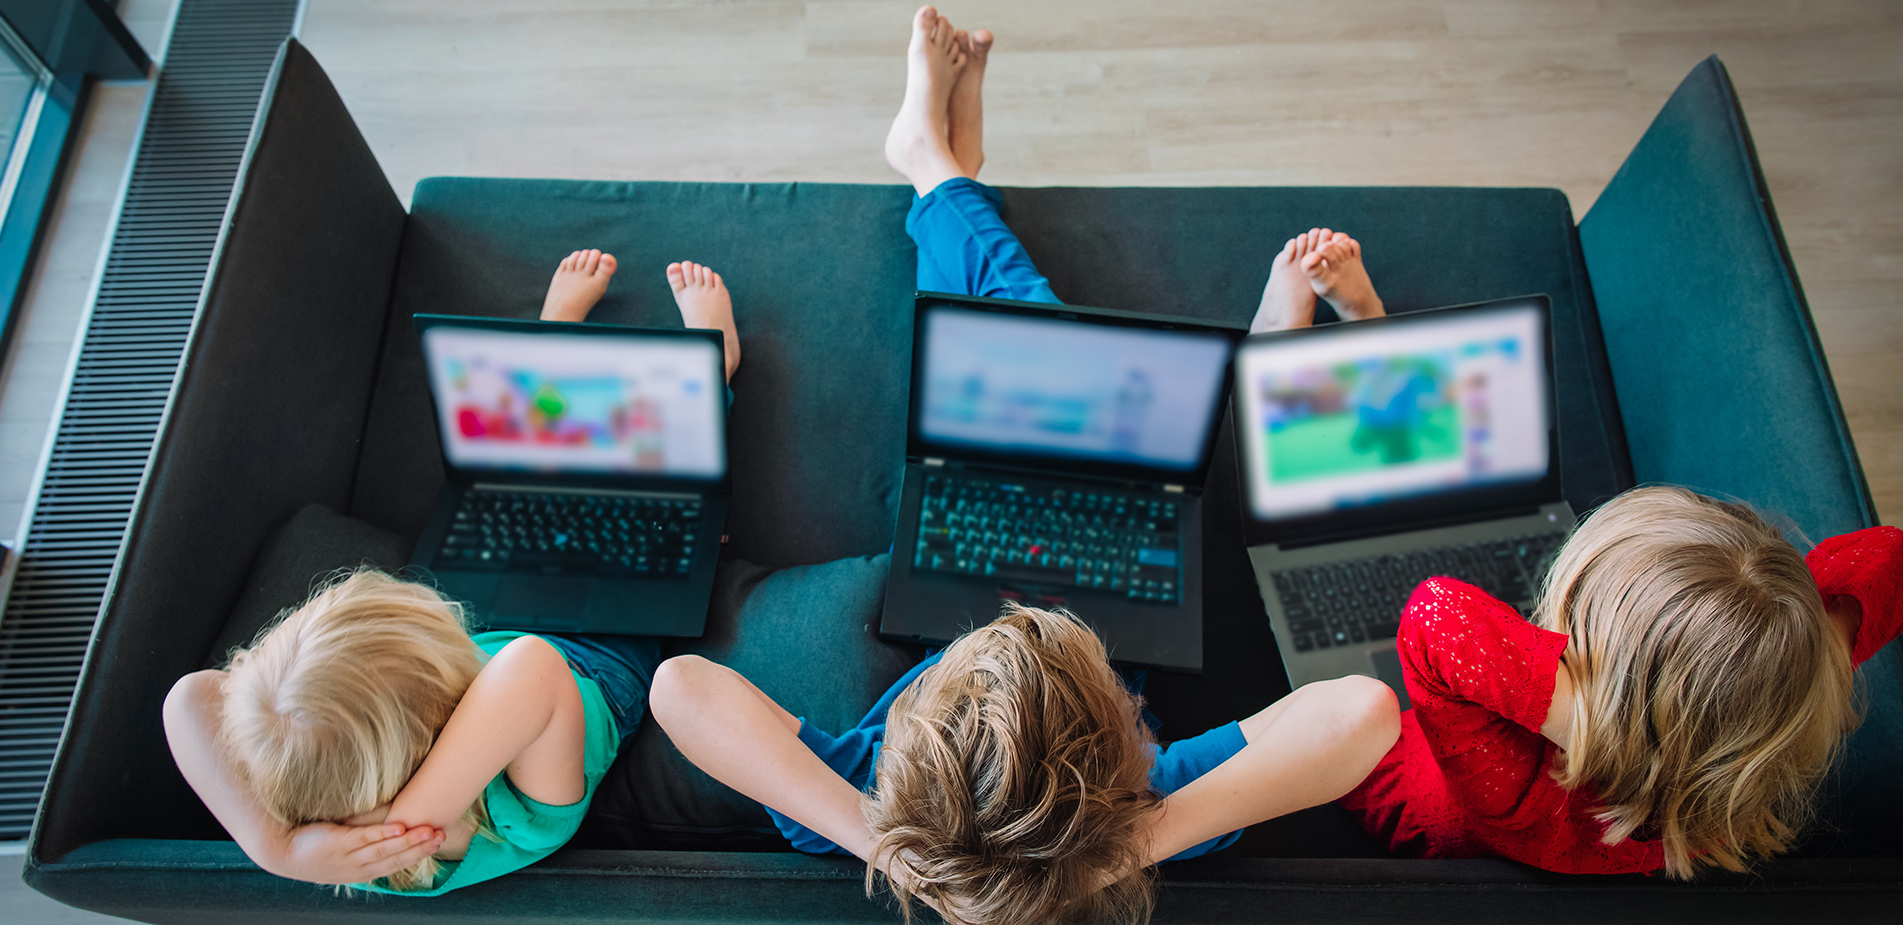 Πώς μεγαλώνεις παιδιά στην ψηφιακή εποχή: Πρακτικές συμβουλές για το ίντερνετ και τις φορητές συσκευές